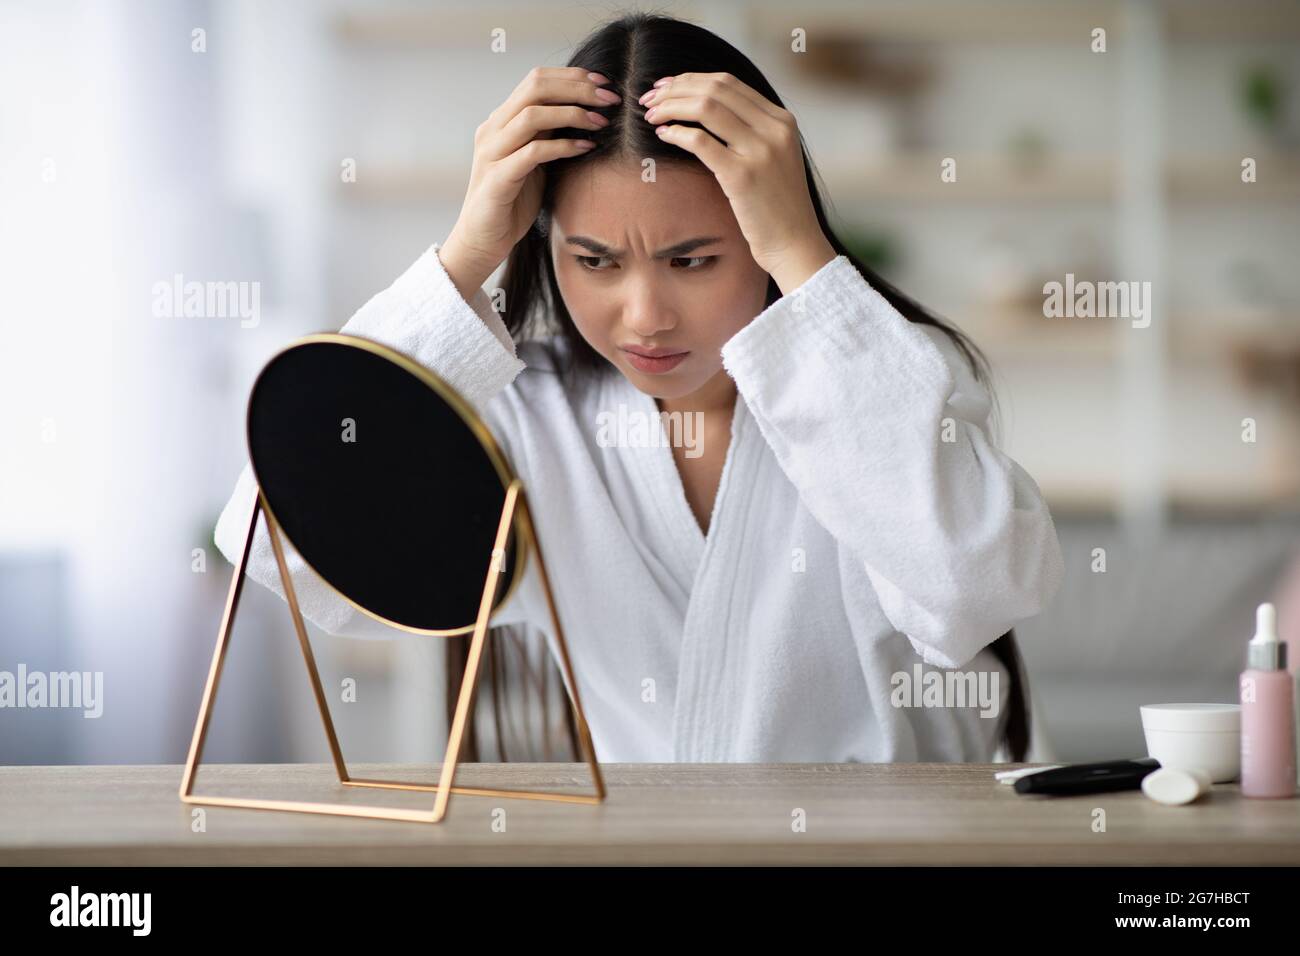 Arrabbiato giovane donna asiatica in accappatoio bianco seduta in camera da letto, controllando i suoi capelli grigi, guardando lo specchio, dopo aver deluso espressione del volto, copia spac Foto Stock